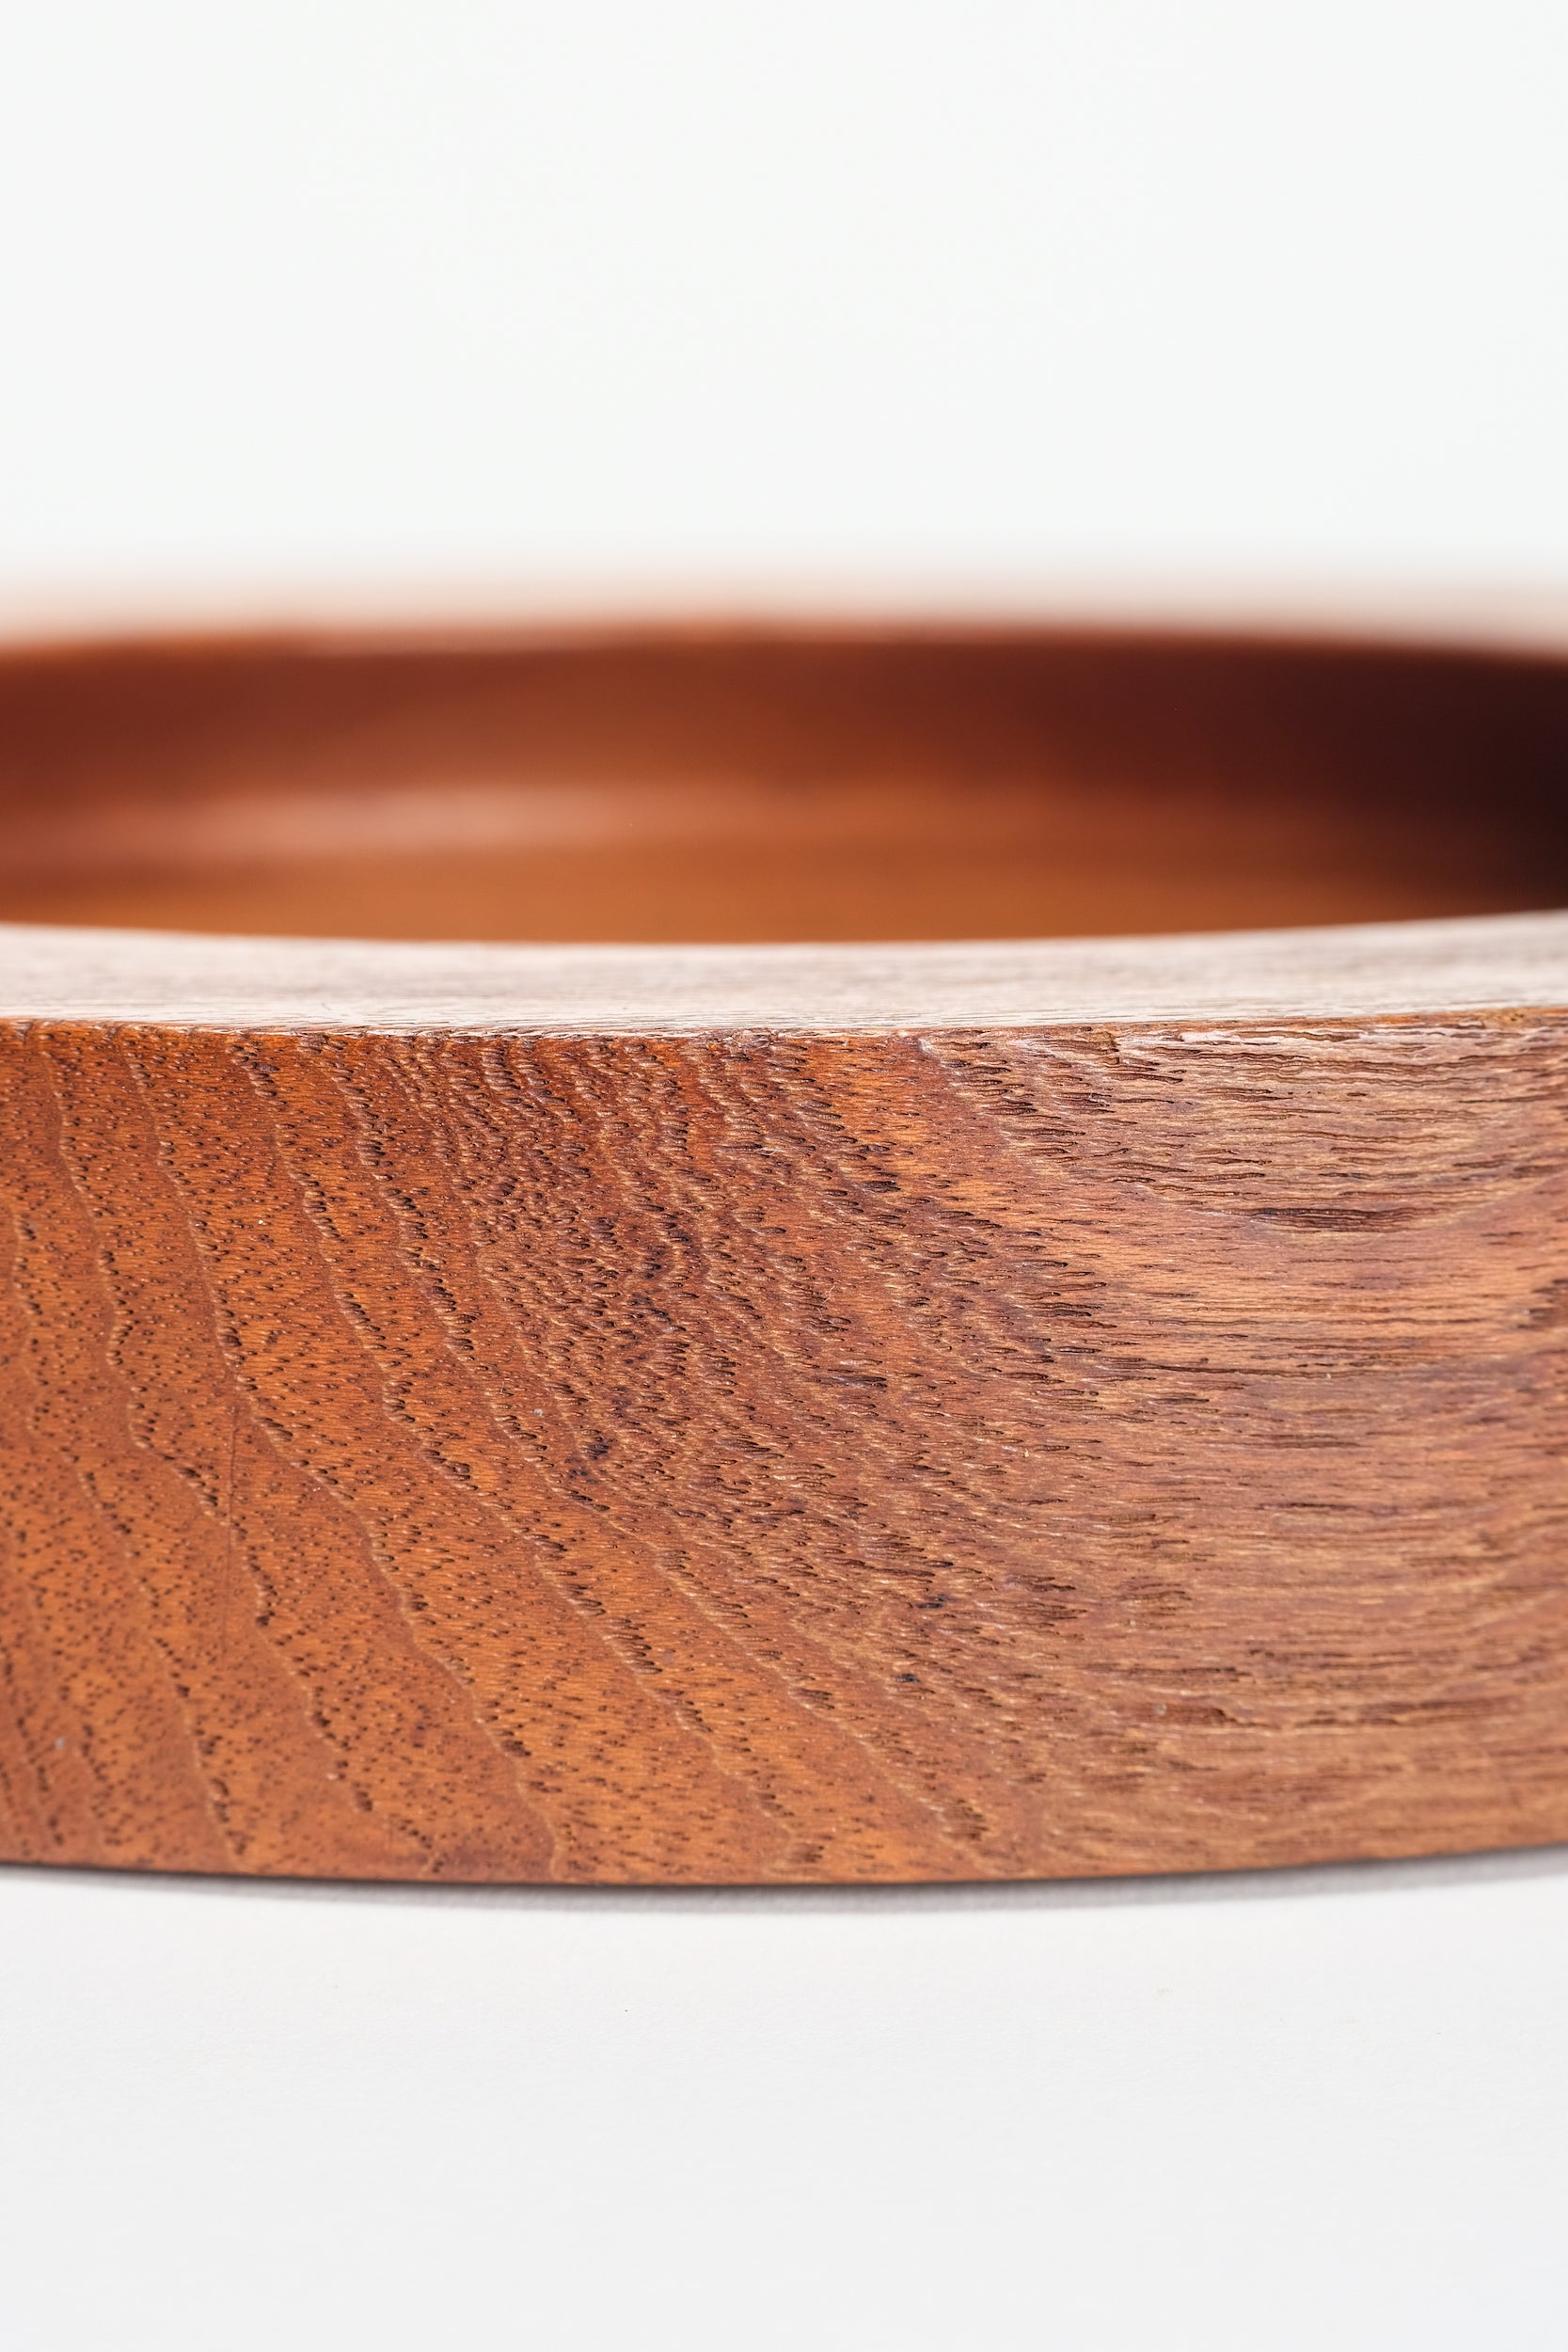 Handmade Teak bowl, Denmark, 60s